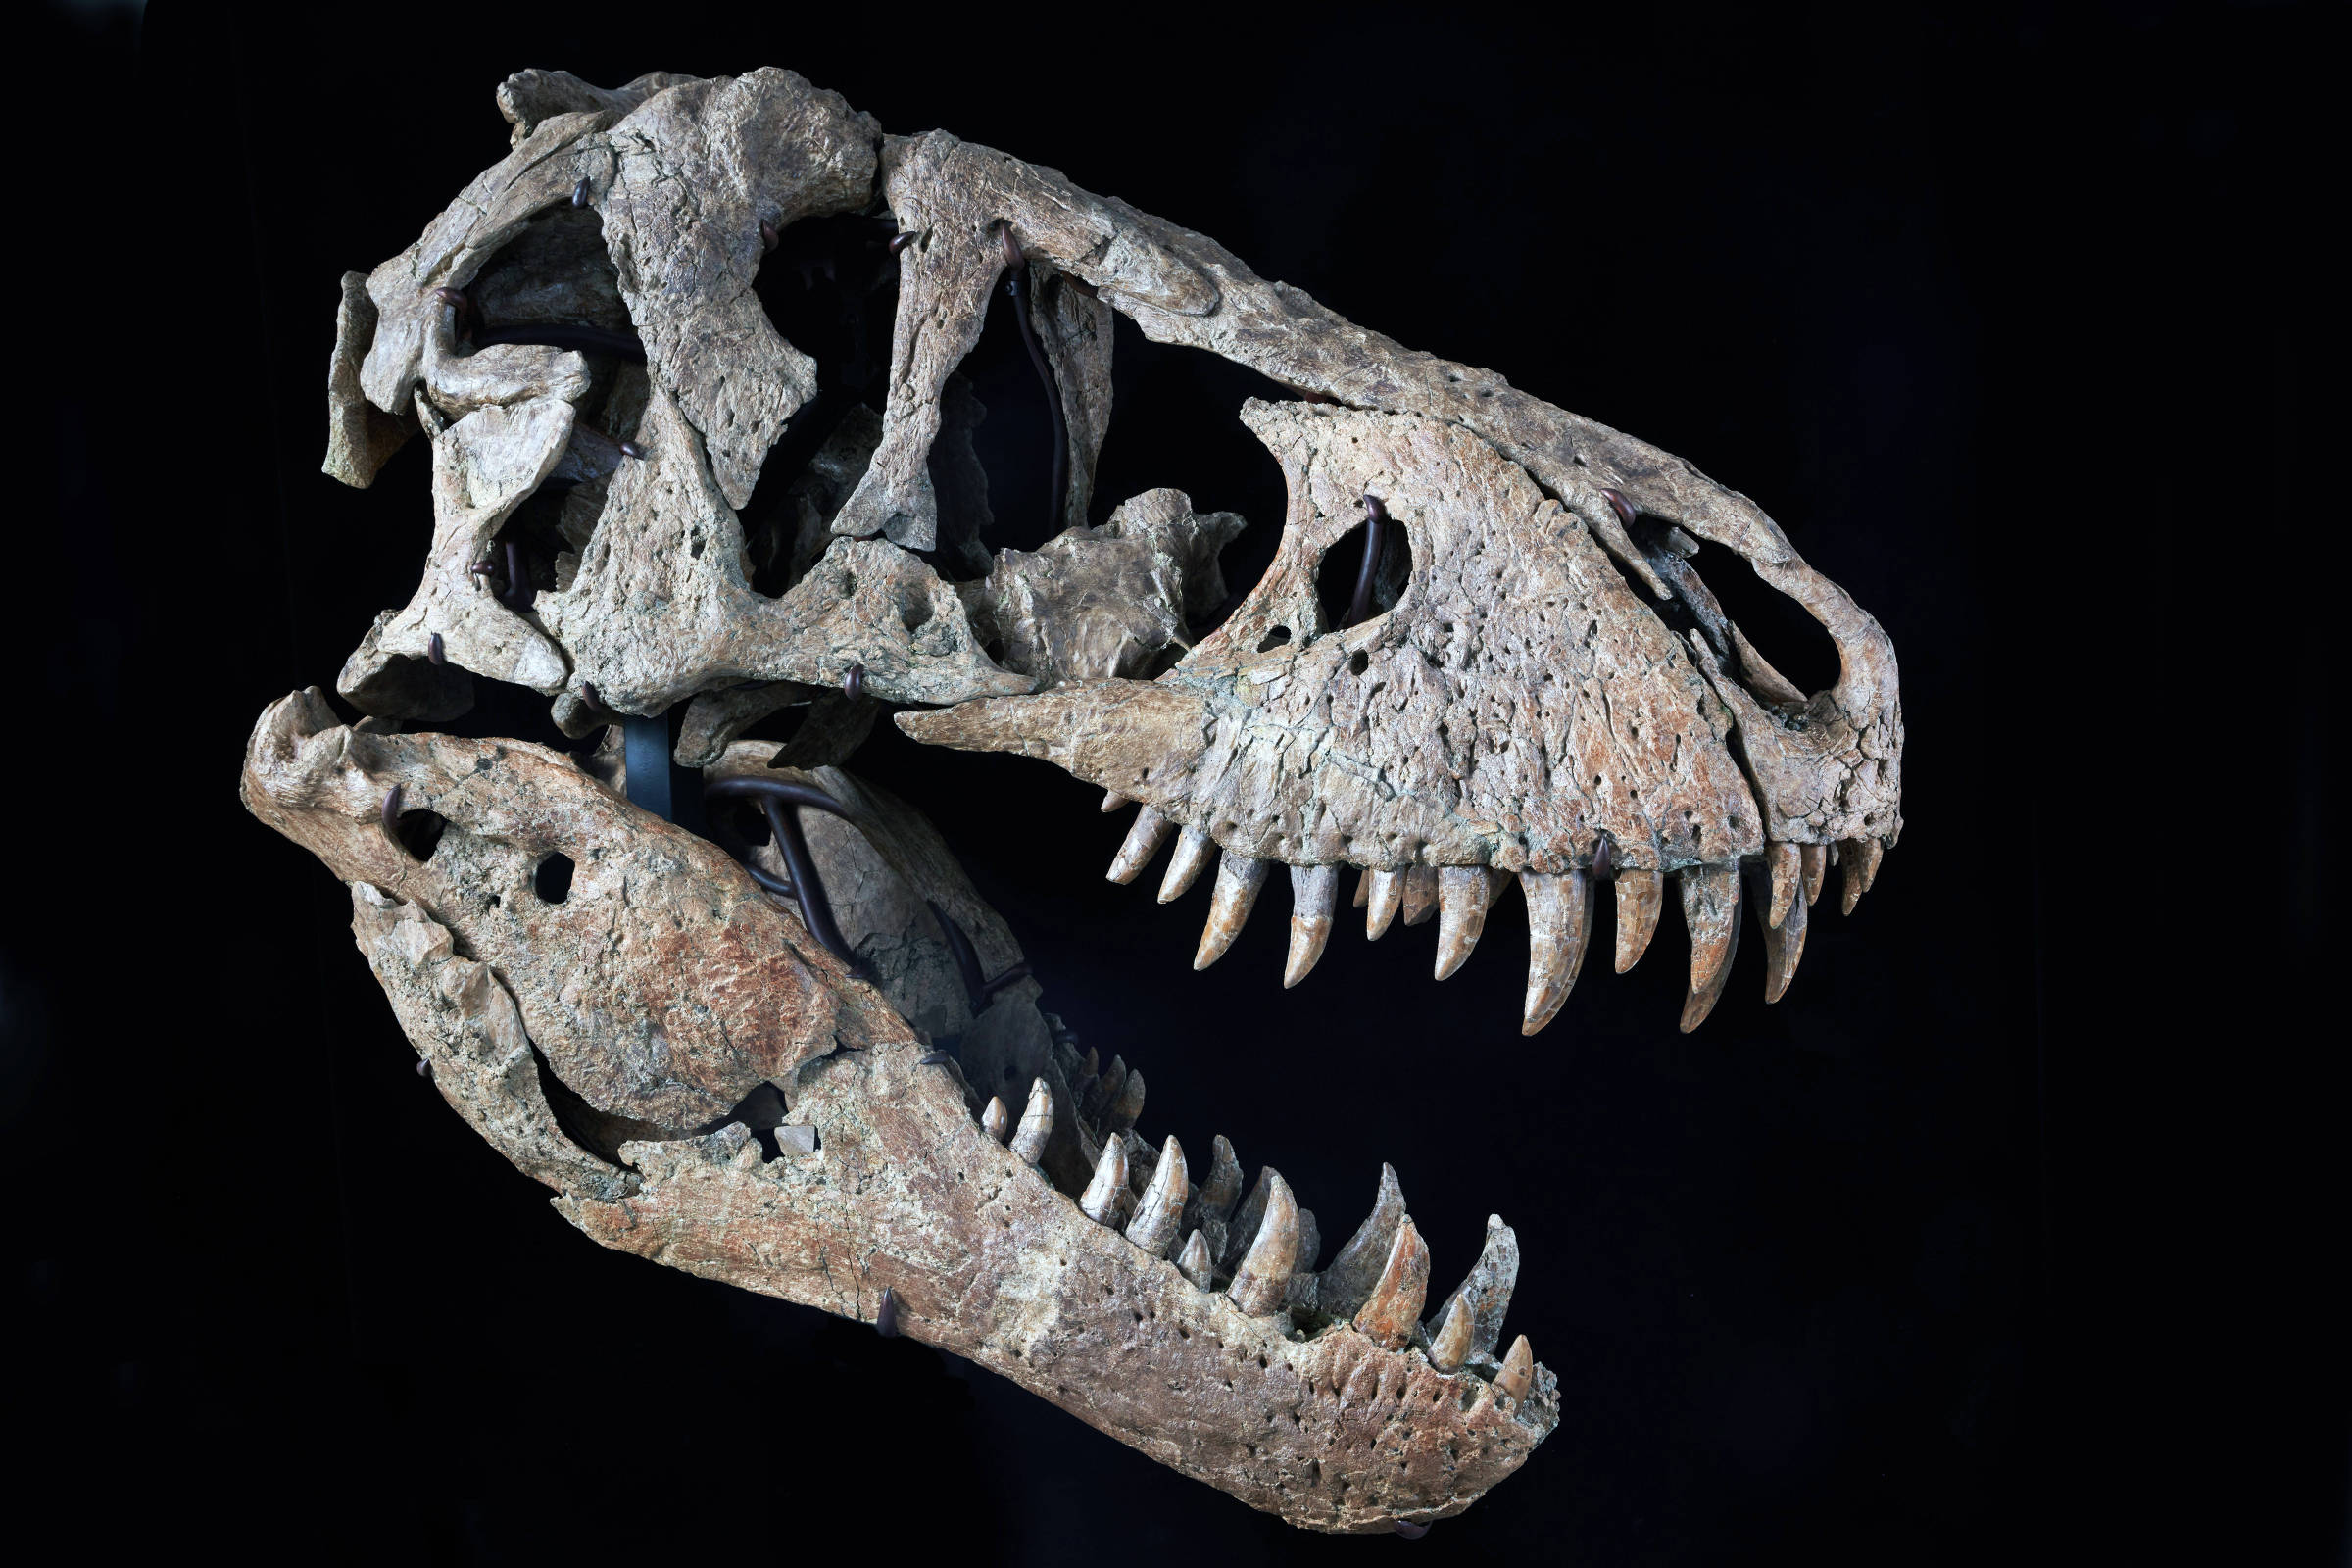 Dentes de Dinossauro, Dino Notícias